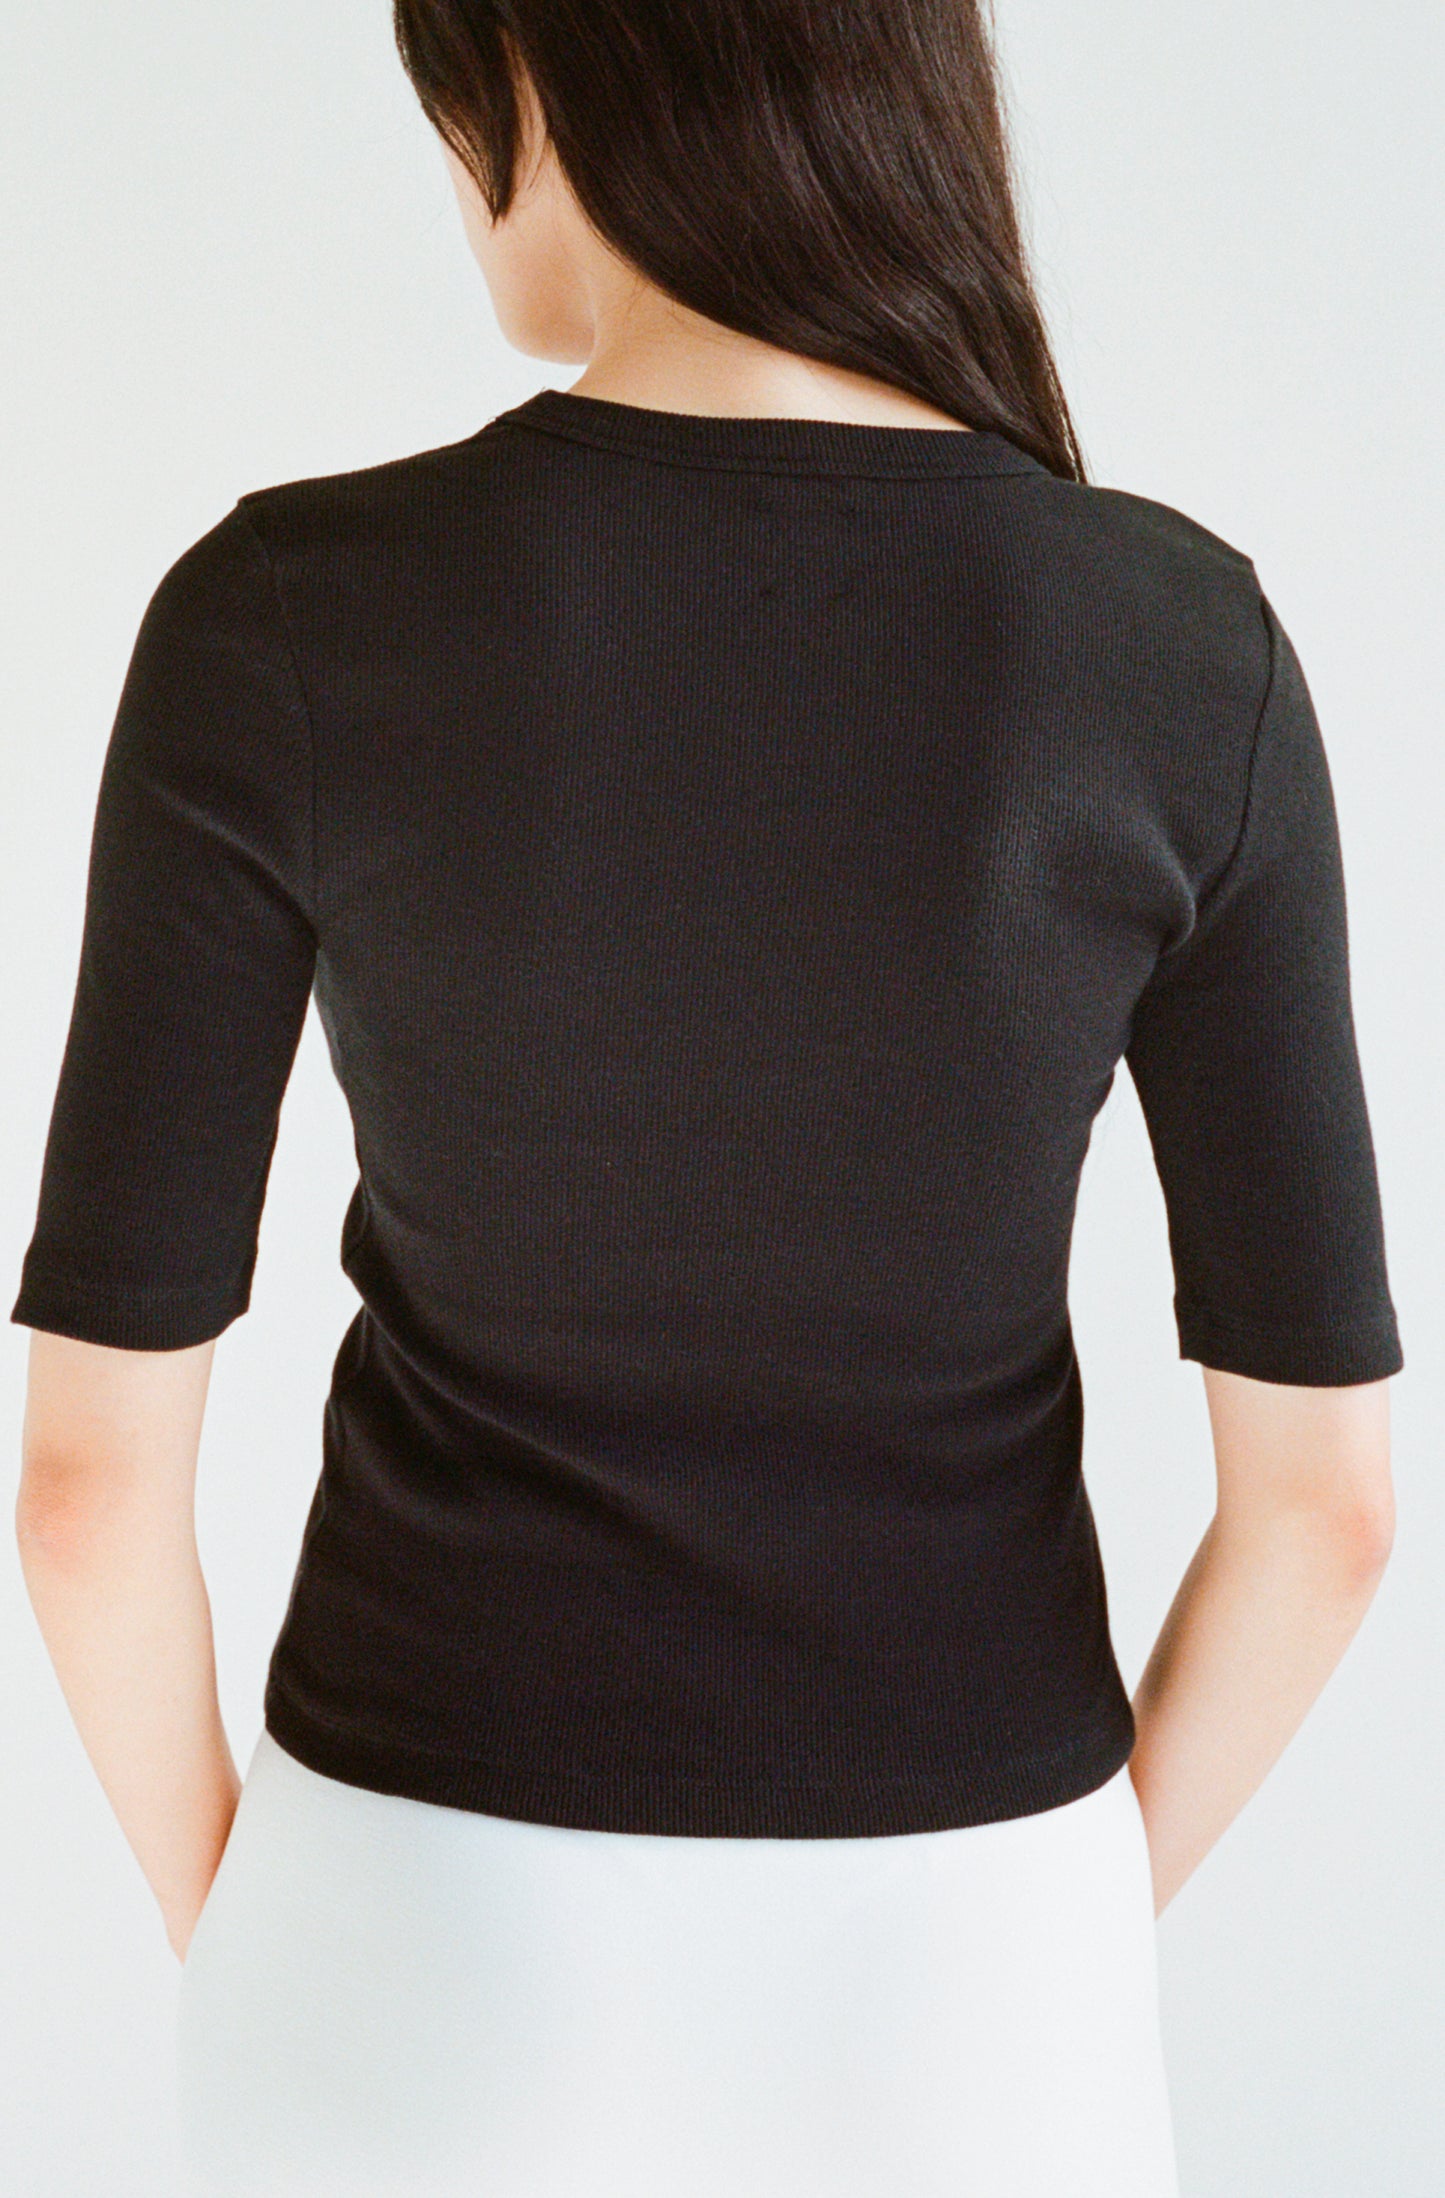 Le t-shirt noir à manches 3/4 femme en coton côtelé biologique OMEAR, vue porté de dos